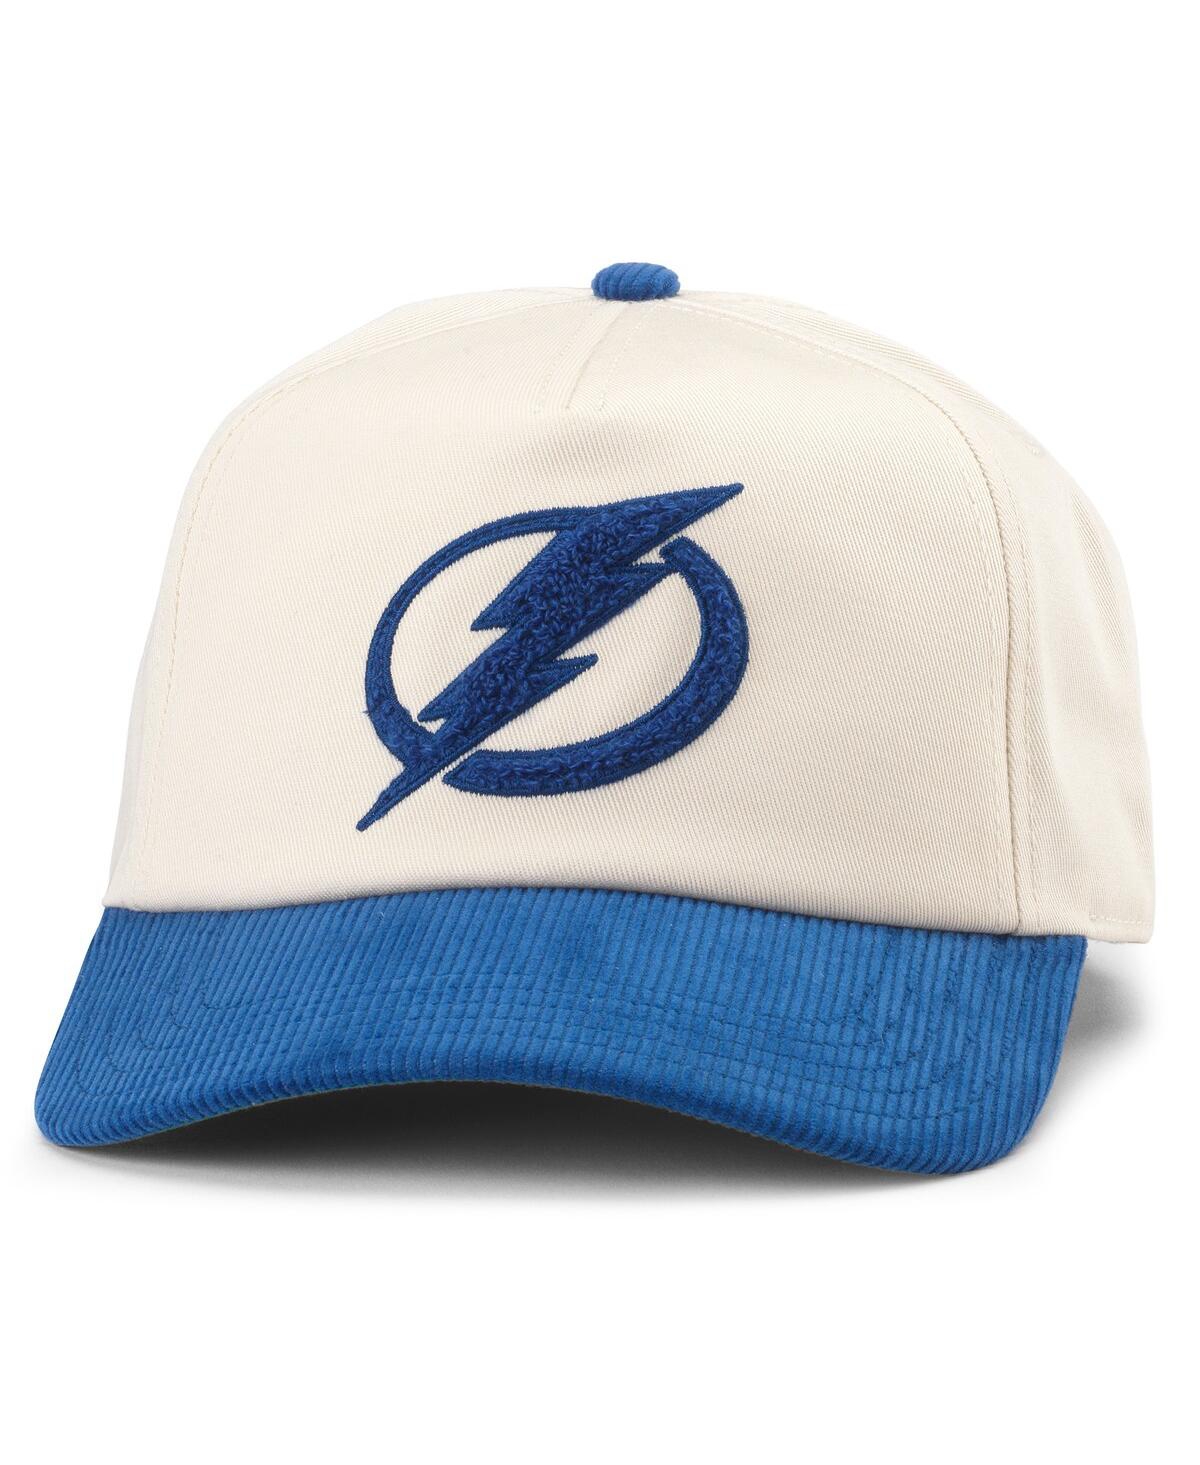 Men's White/Blue Tampa Bay Lightning Burnett Adjustable Hat - Cream-roya